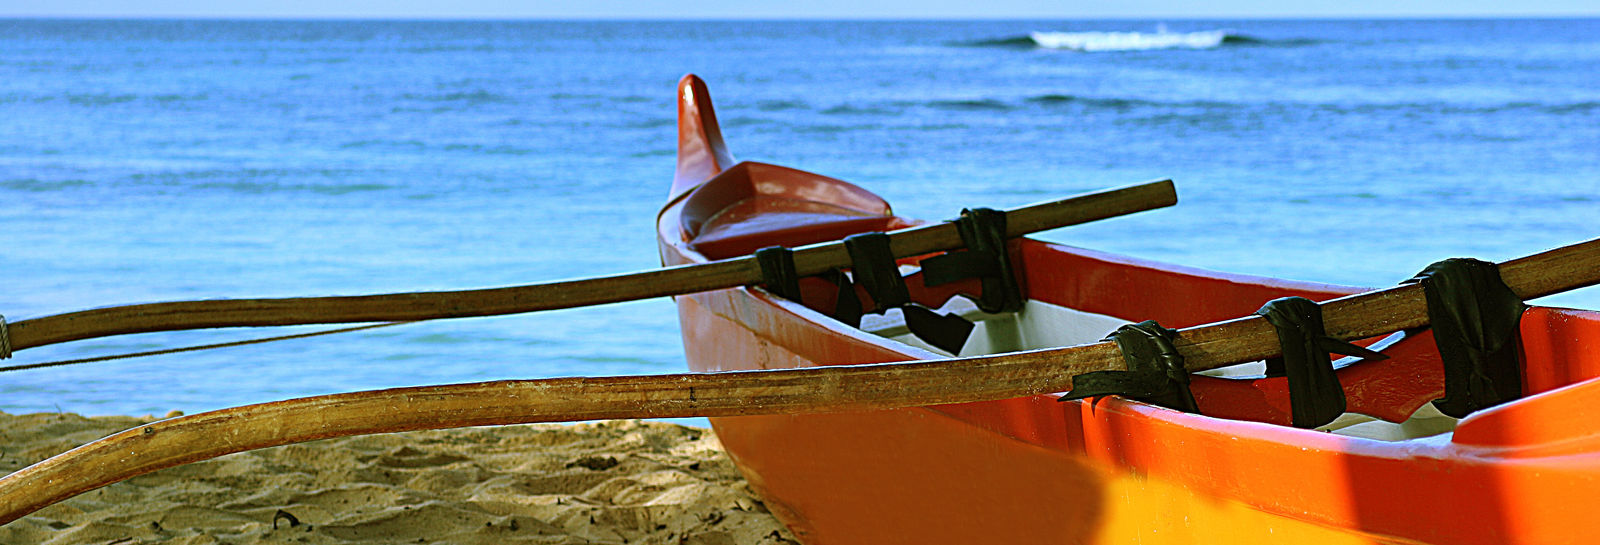 Outrigger Canoe Closeup